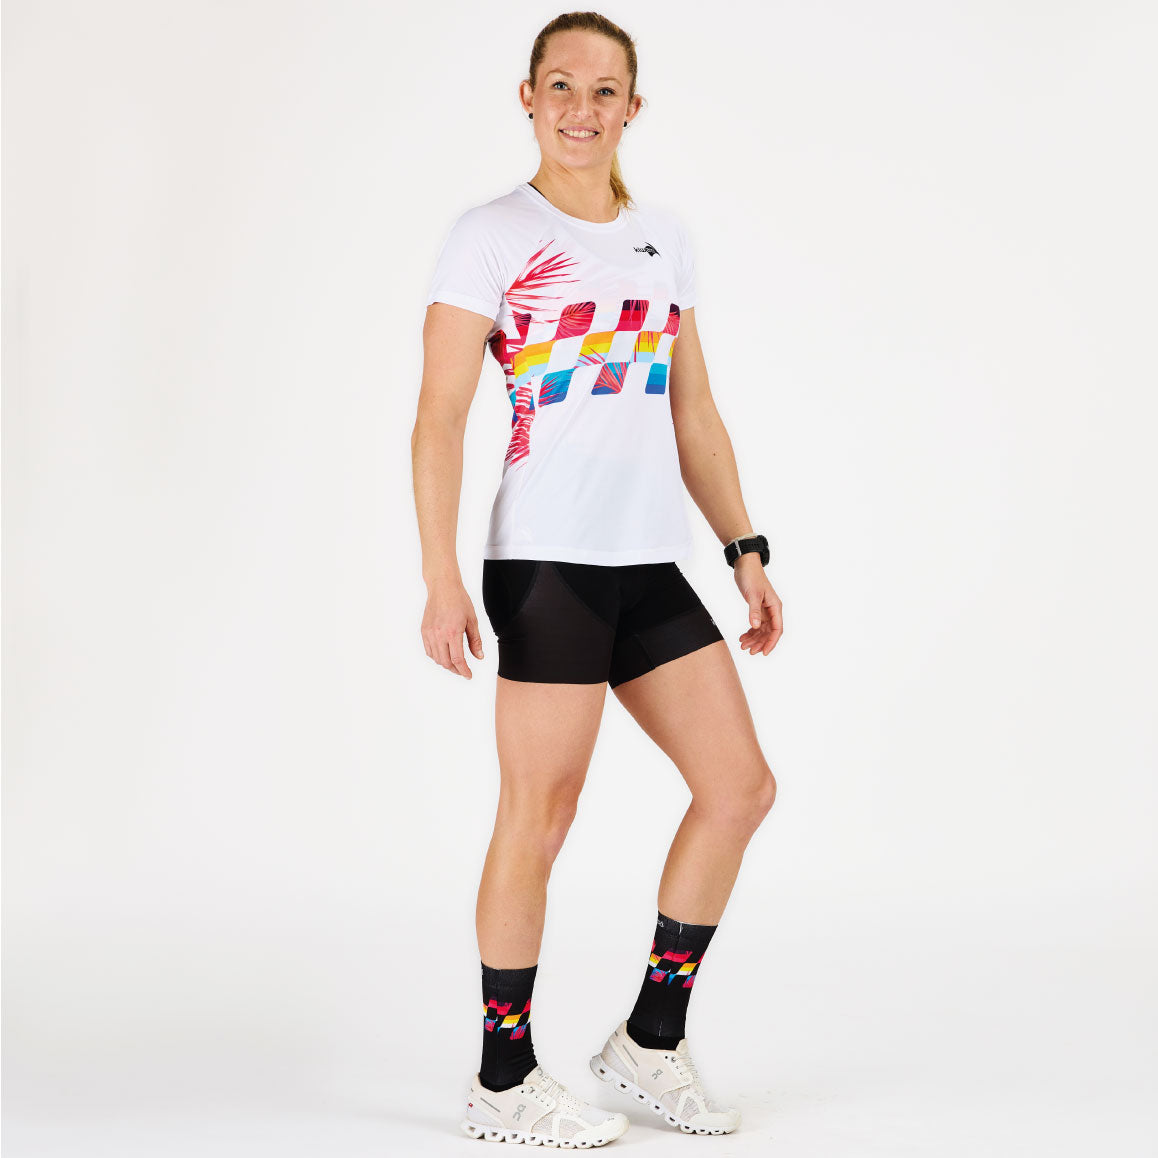 tee-shirt femme pour la course à pied running sports kiwami fabrication française idée cadeau